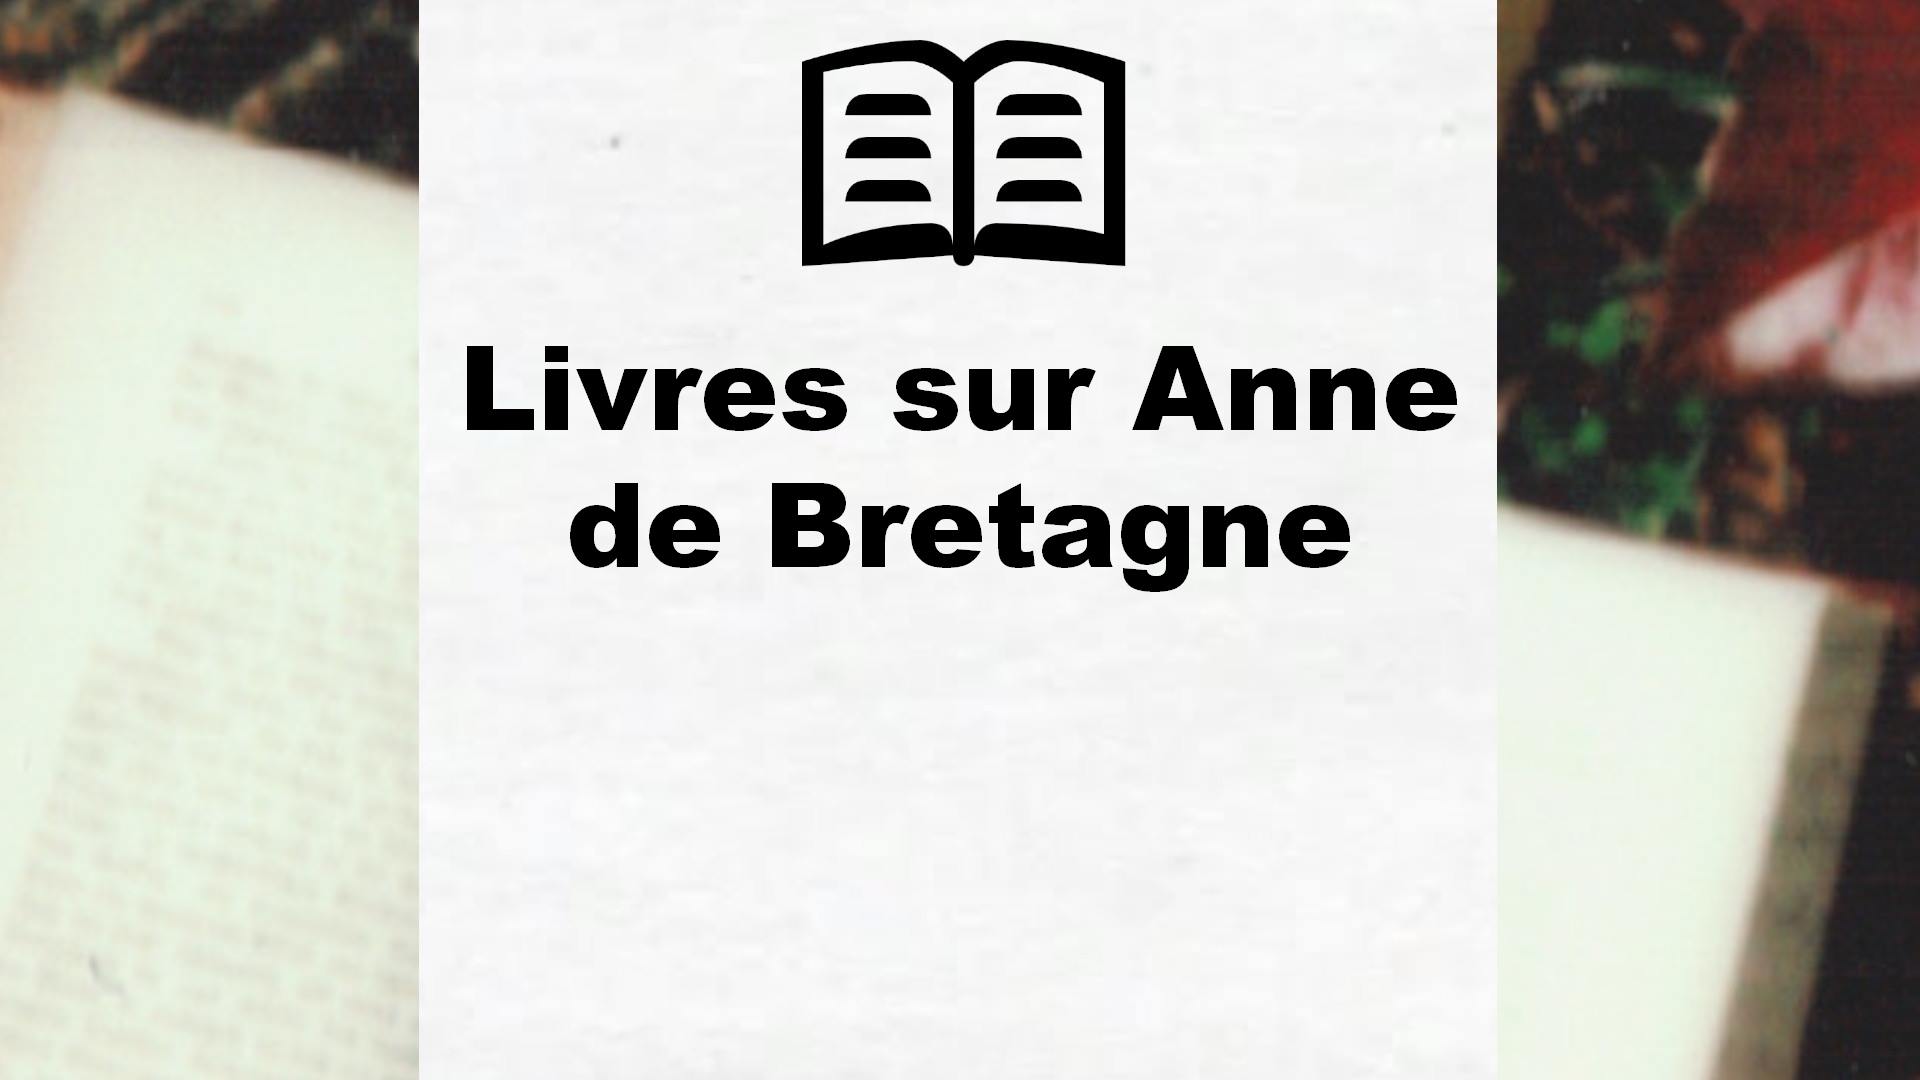 Livres sur Anne de Bretagne